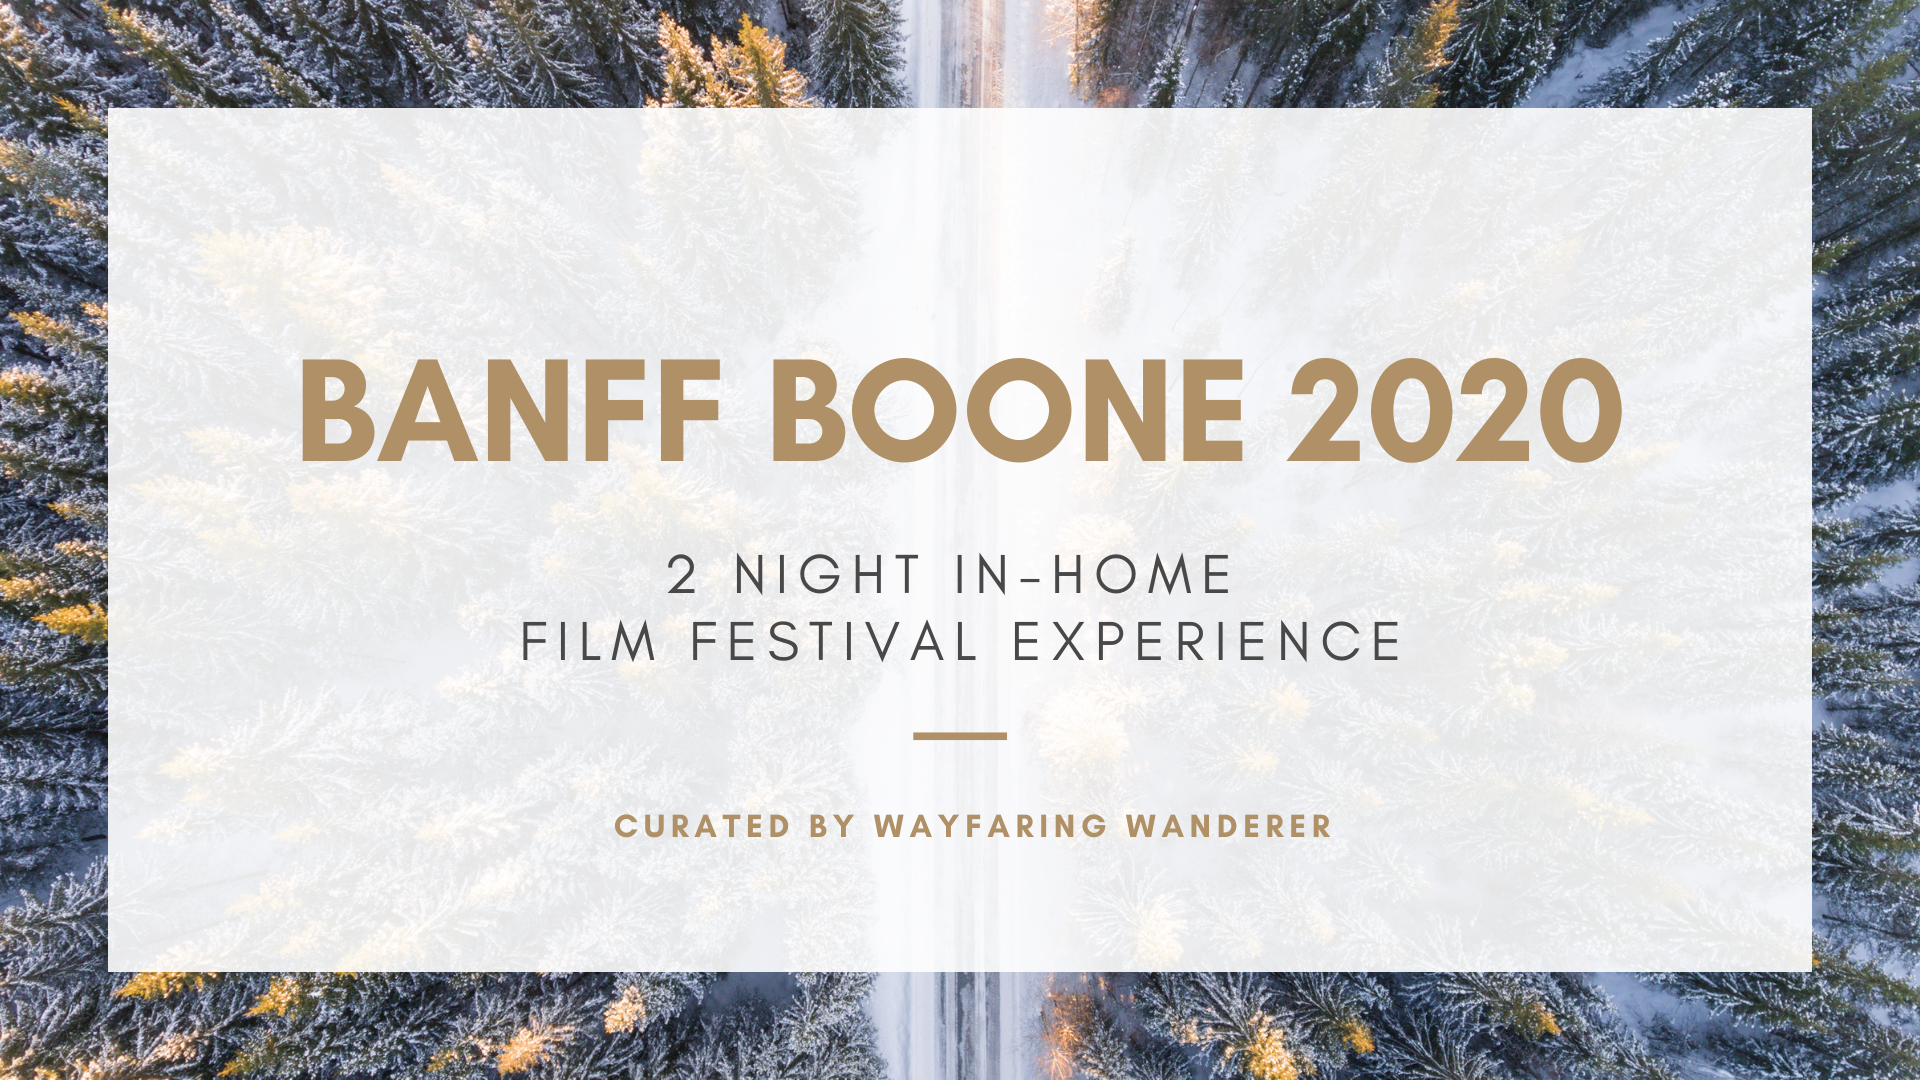 Banff Boone NC 2020